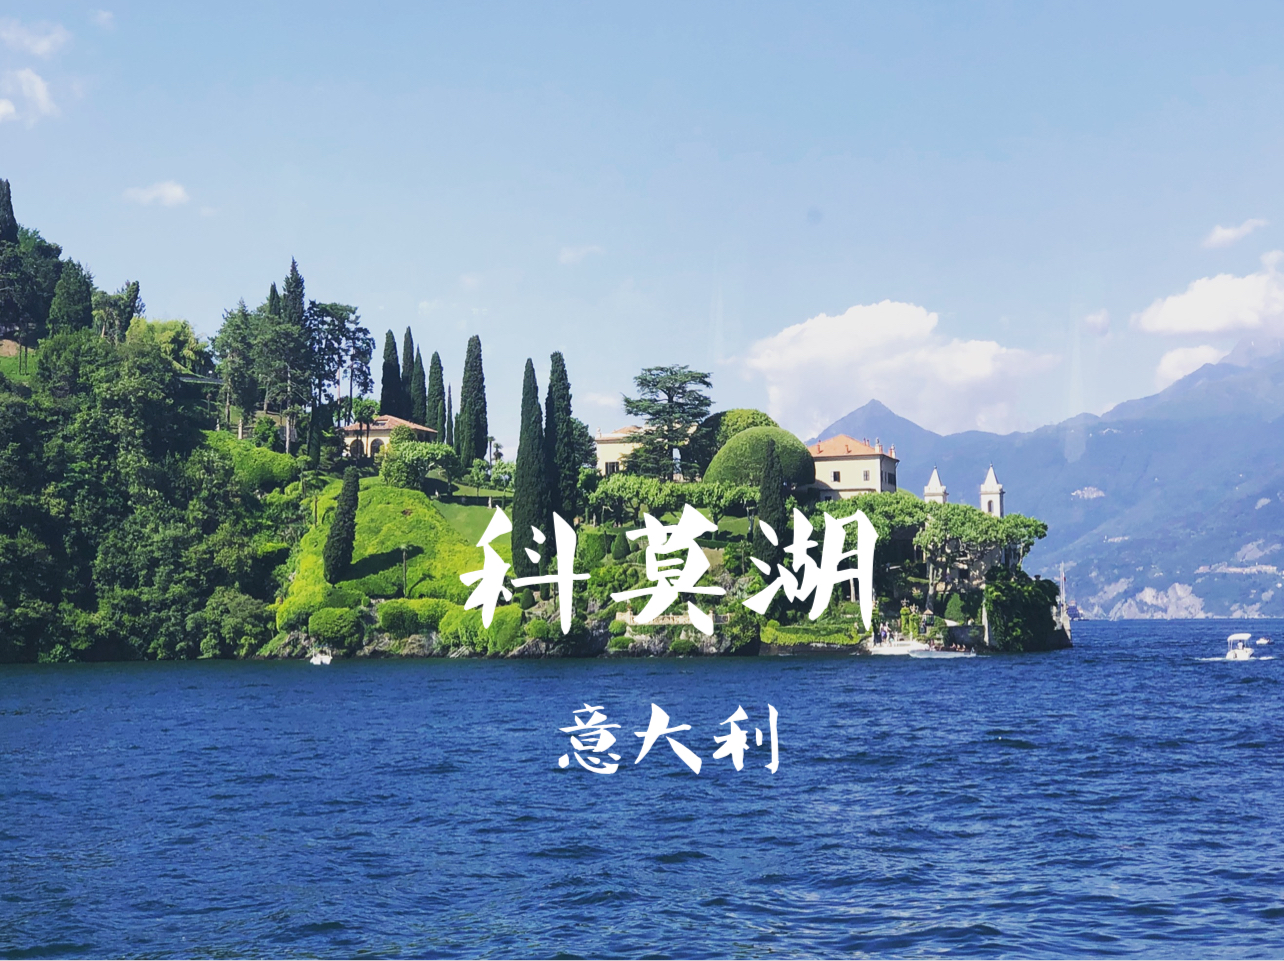 意大利🇮🇹｜科莫湖如童话般美丽的地方